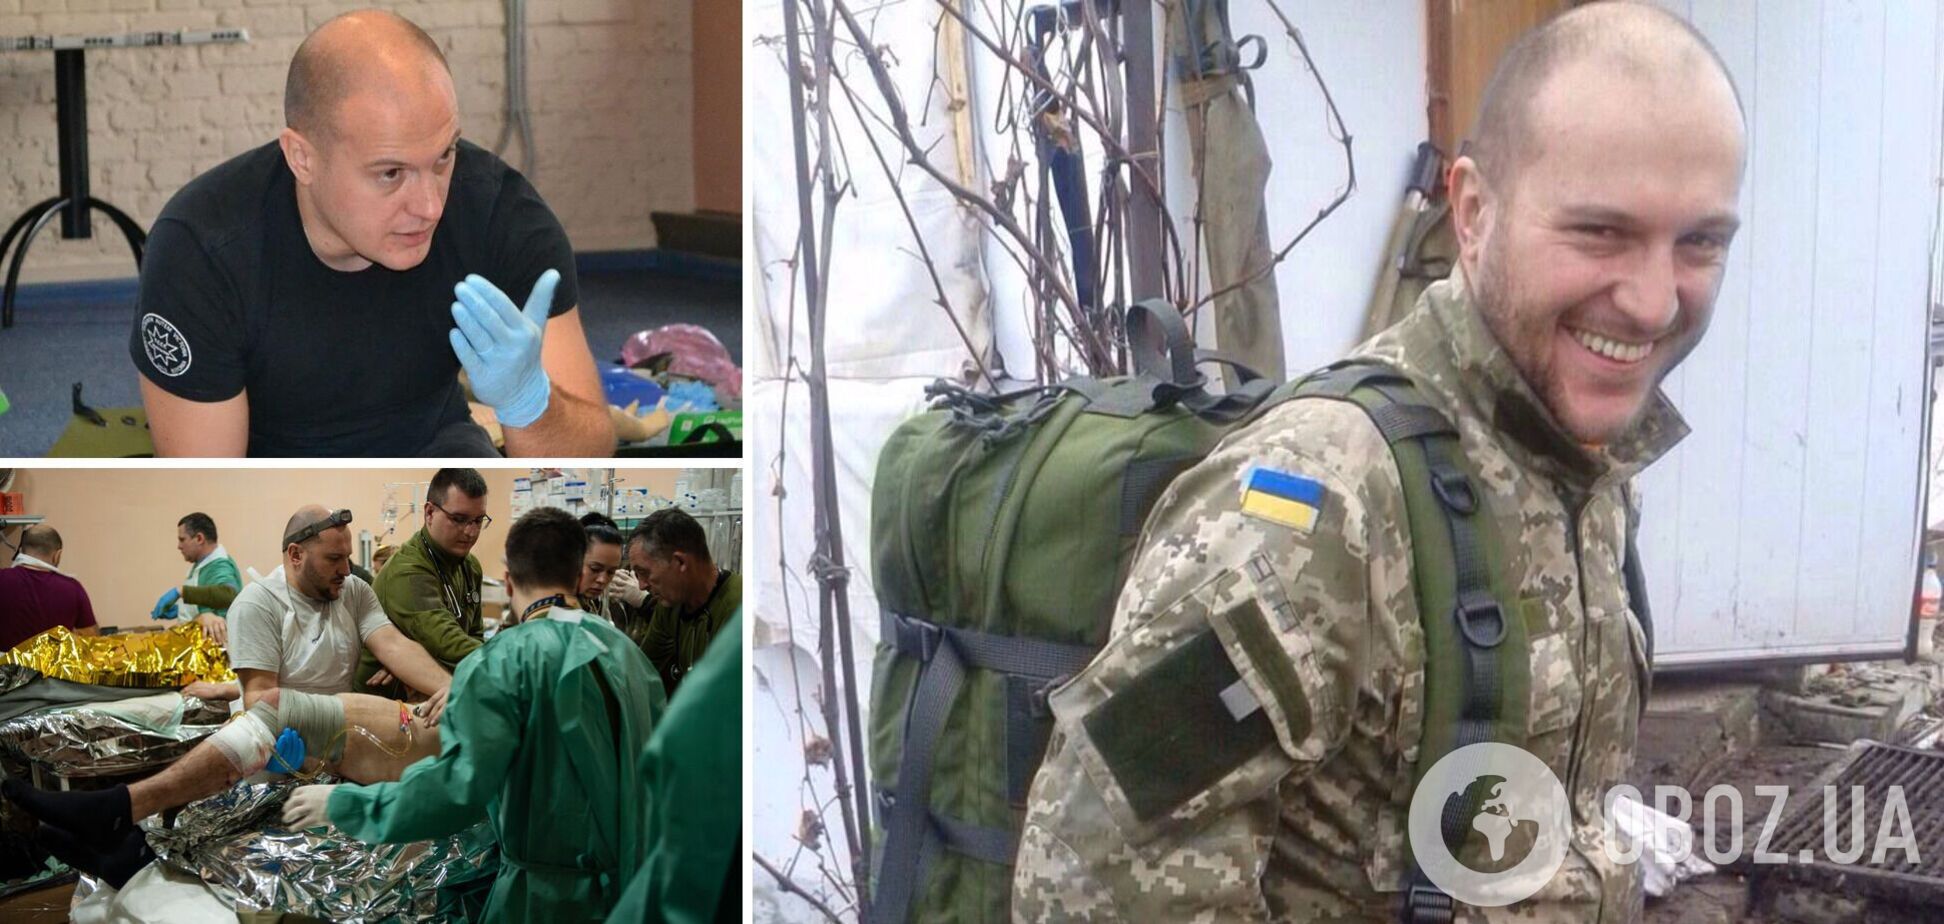 Спасал раненых в самом пекле: что известно о погибшем на Донбассе медике Романе Бабиче